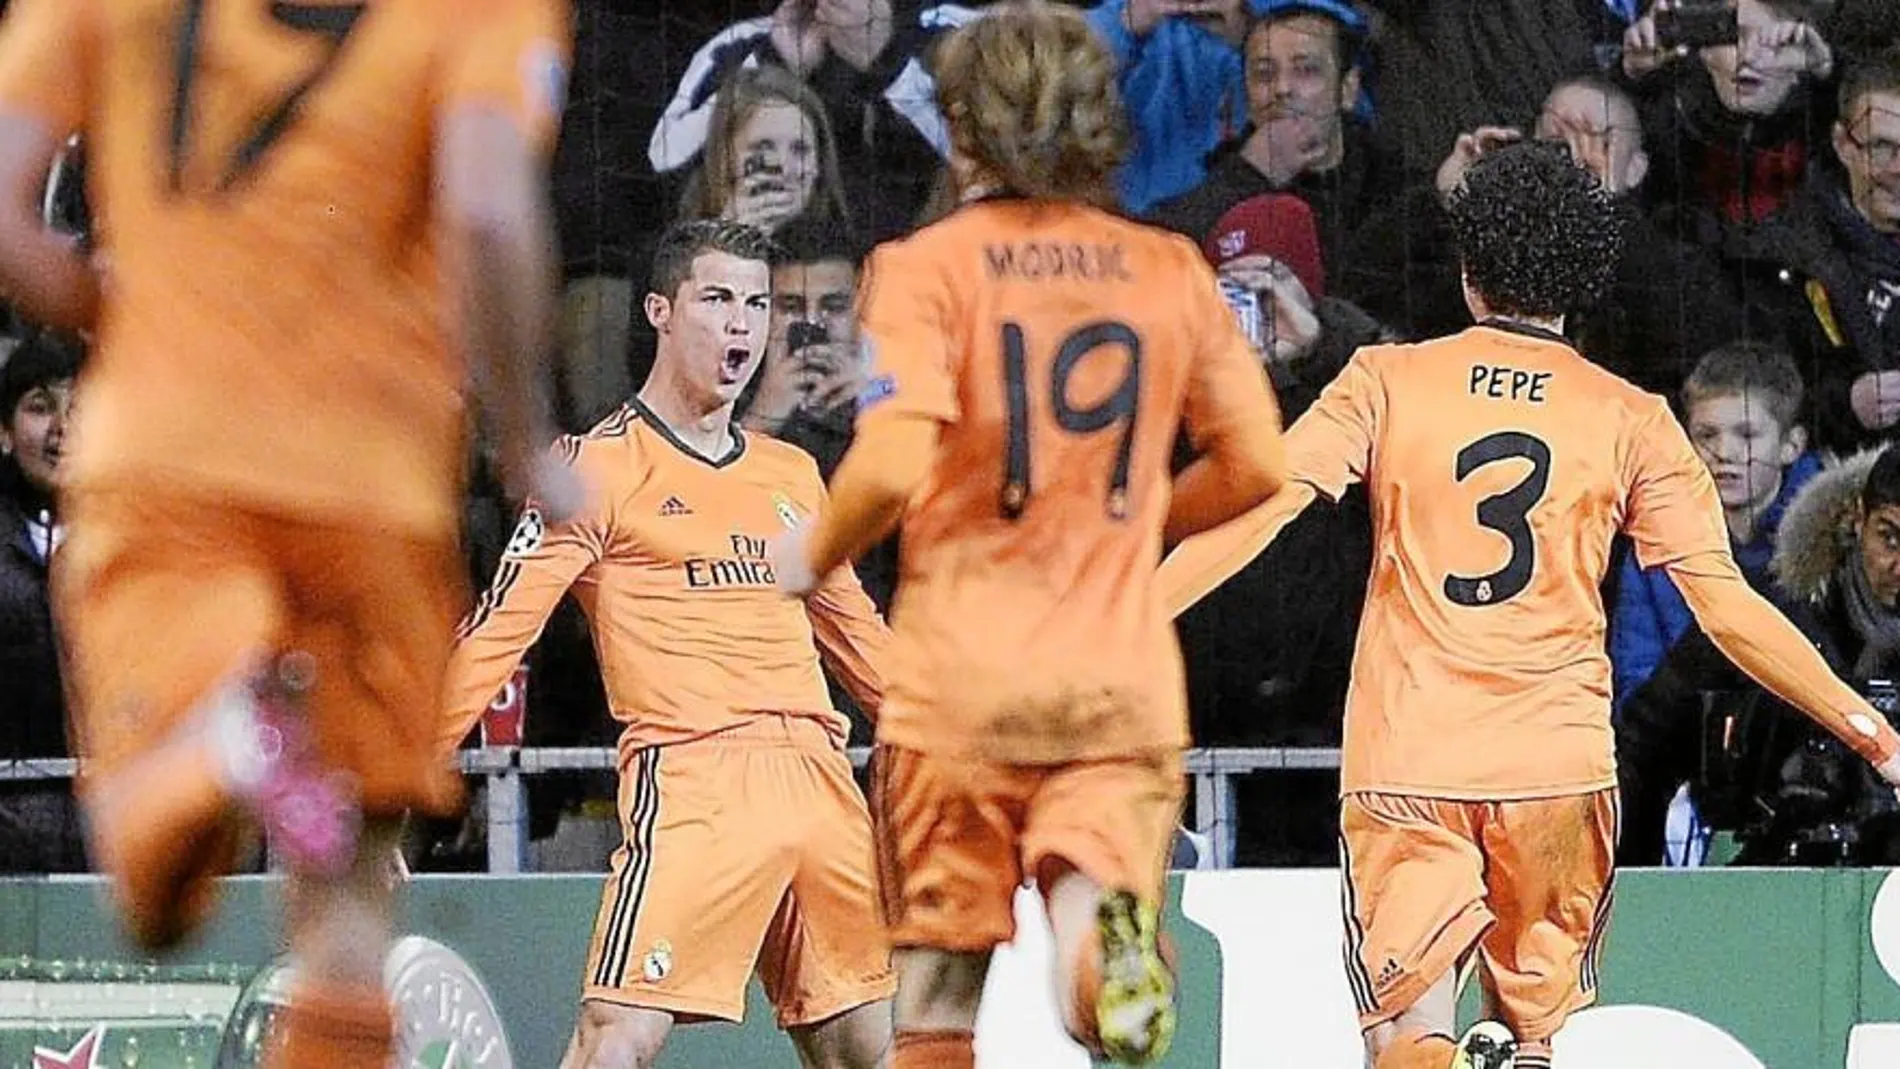 Pepe y Modric corren a felicitar a Ronaldo por su gol y por su récord